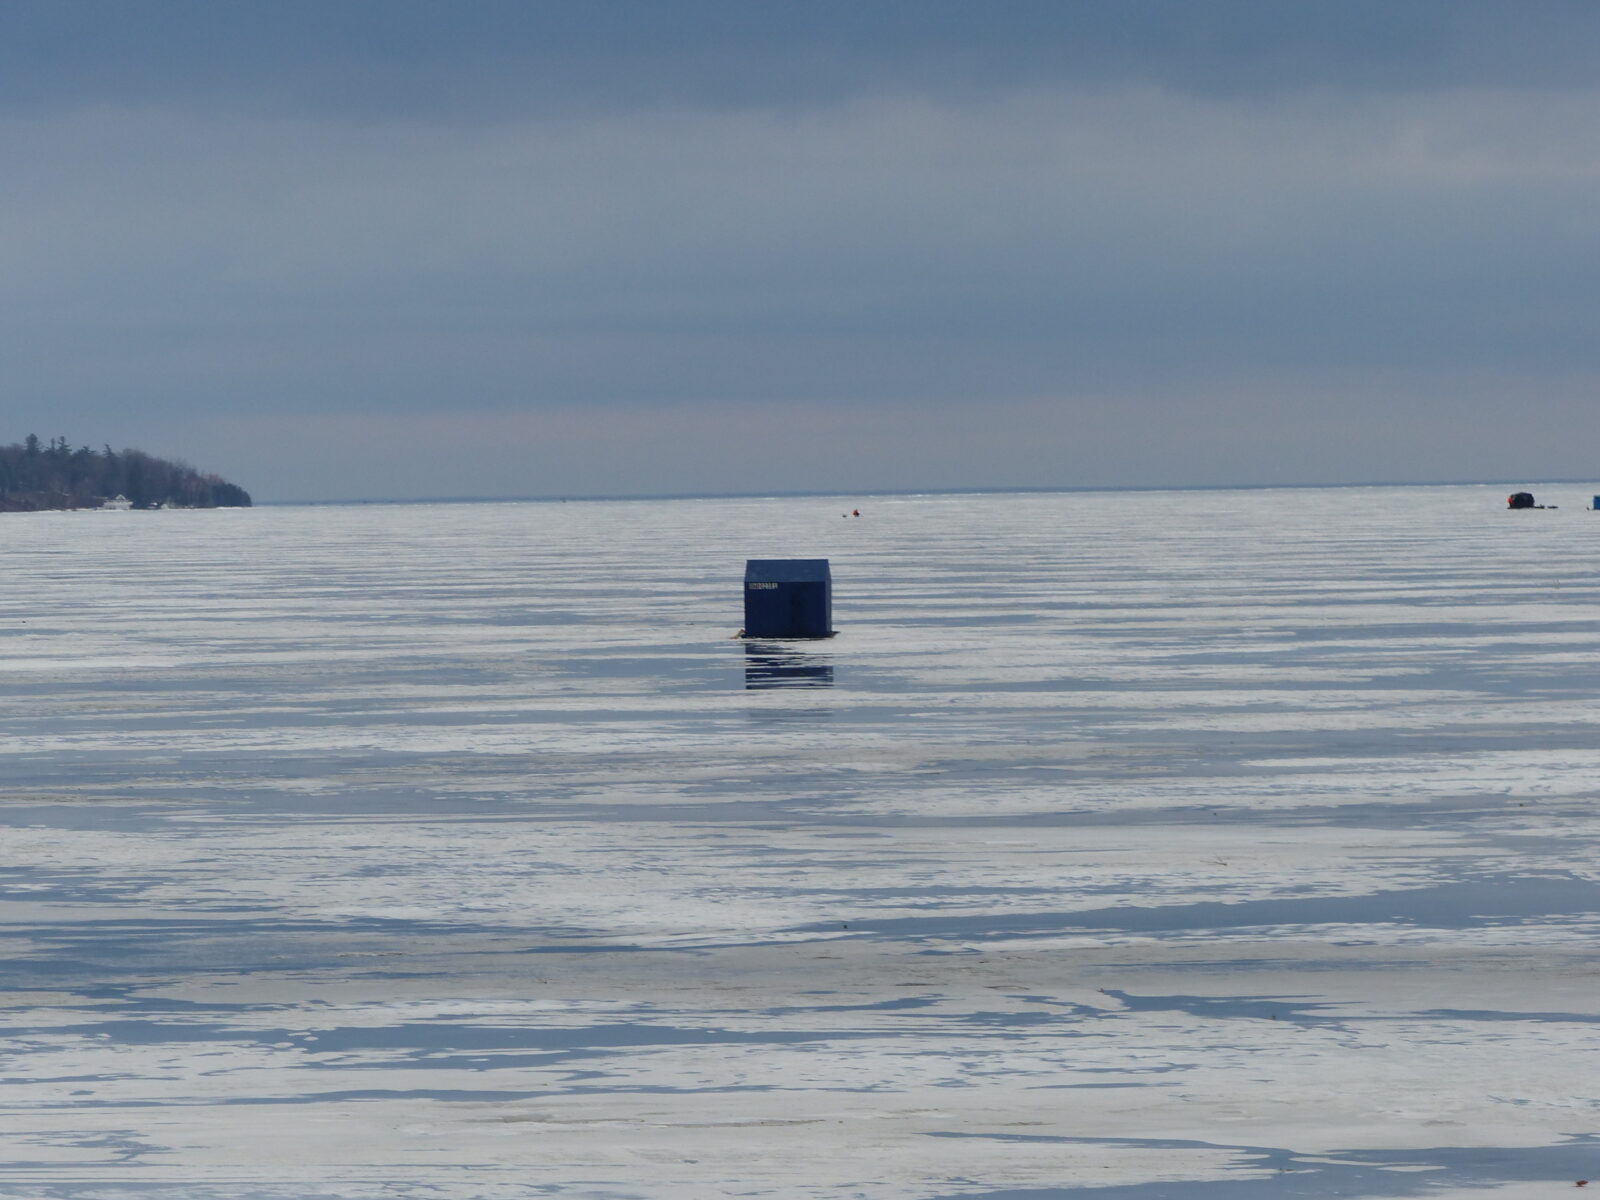 Ice Fishing Land Based Learning